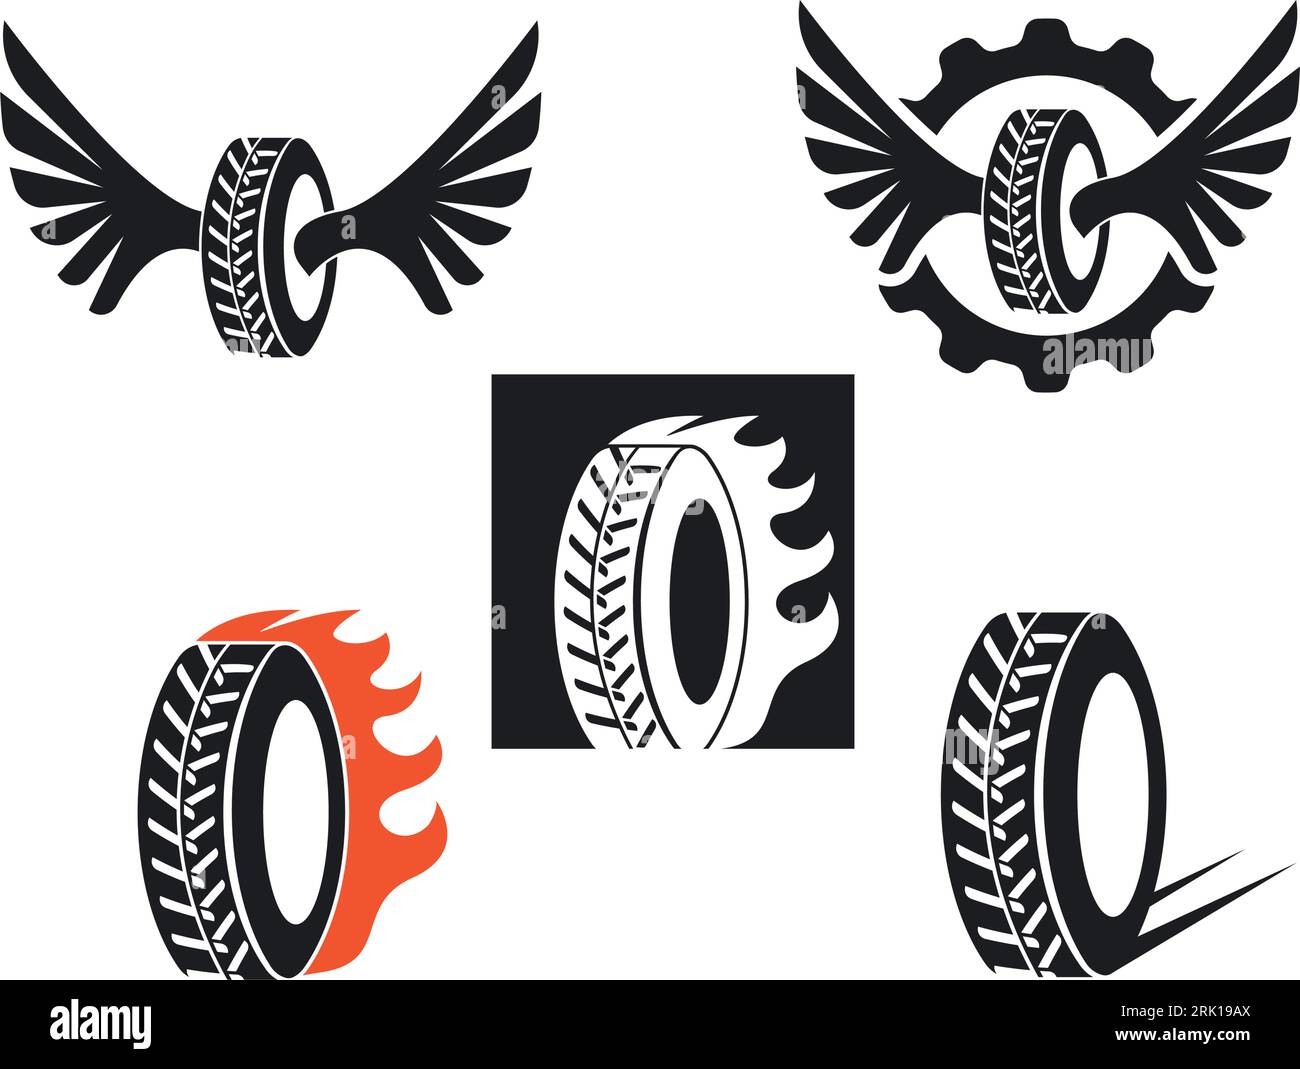 car tire icon logo illustration vector template design Stock Vector